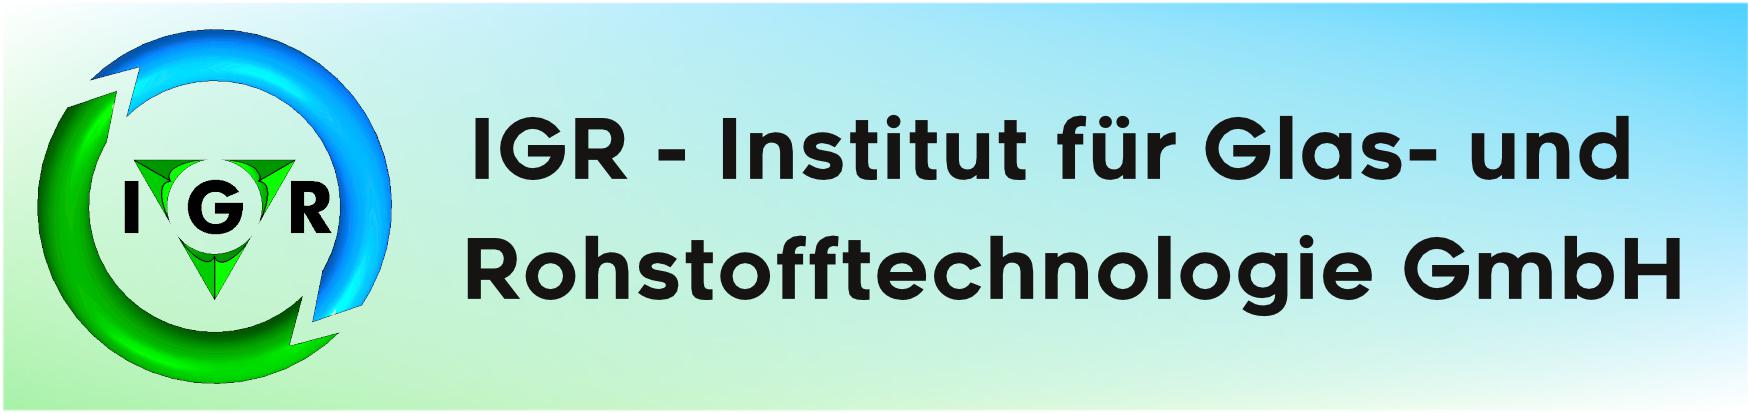 IGR Institut für Glas- und Rohstofftechnologie GmbH